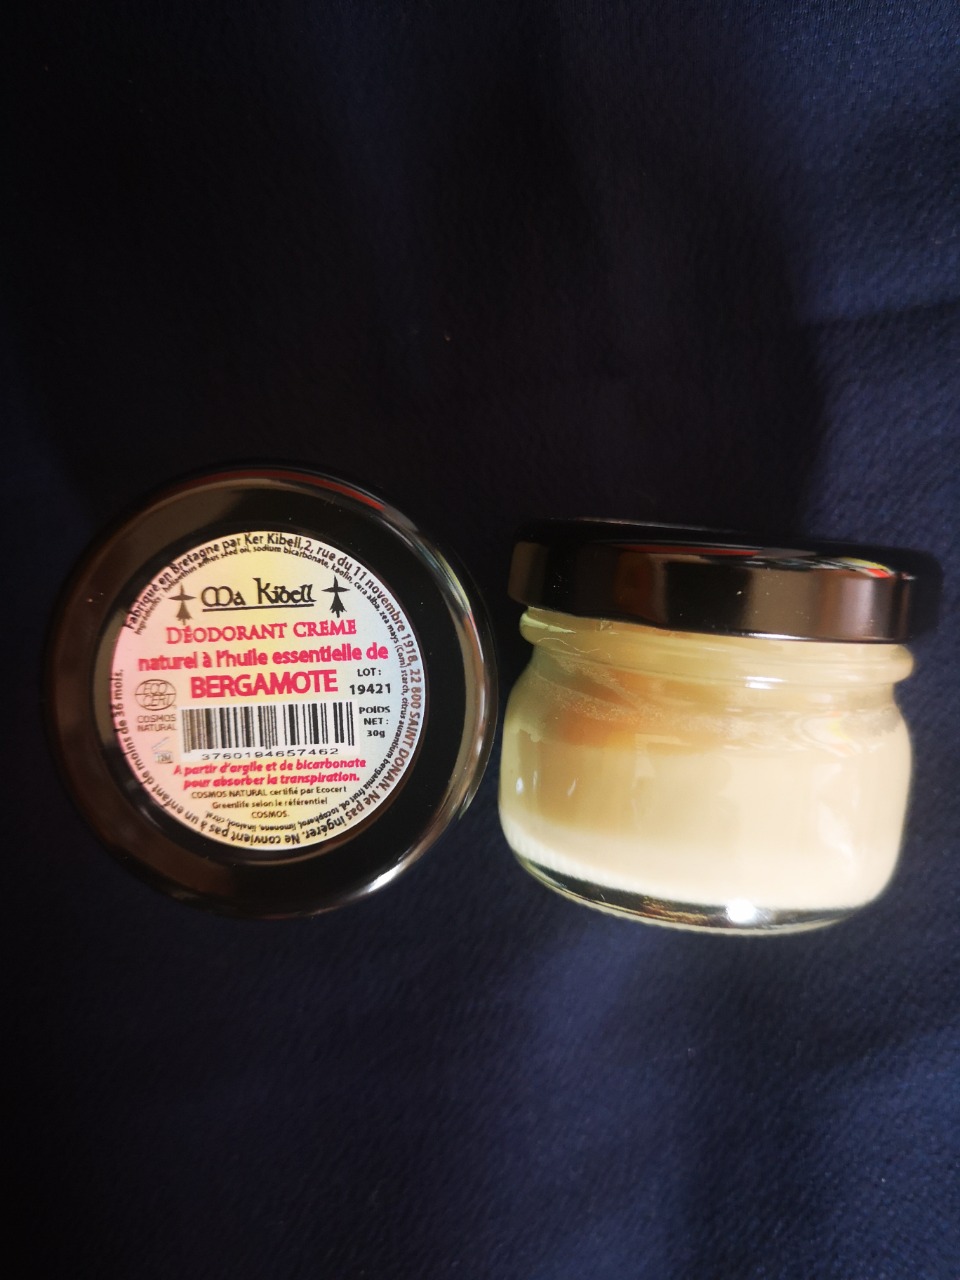 déodorant naturel crème à la bergamote